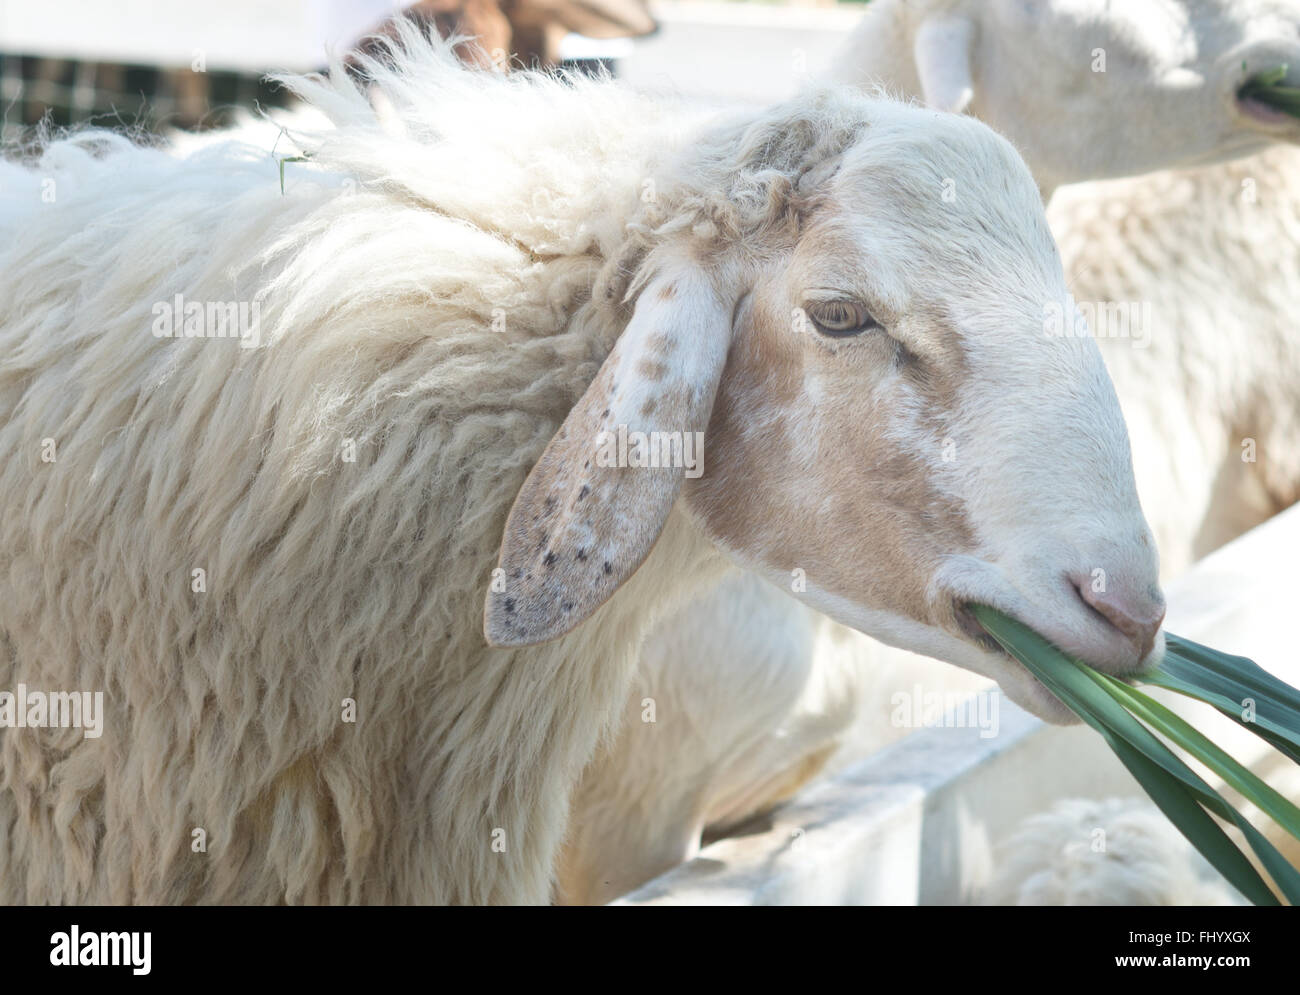 Schaf Essen Rasen in einer farm Stockfoto